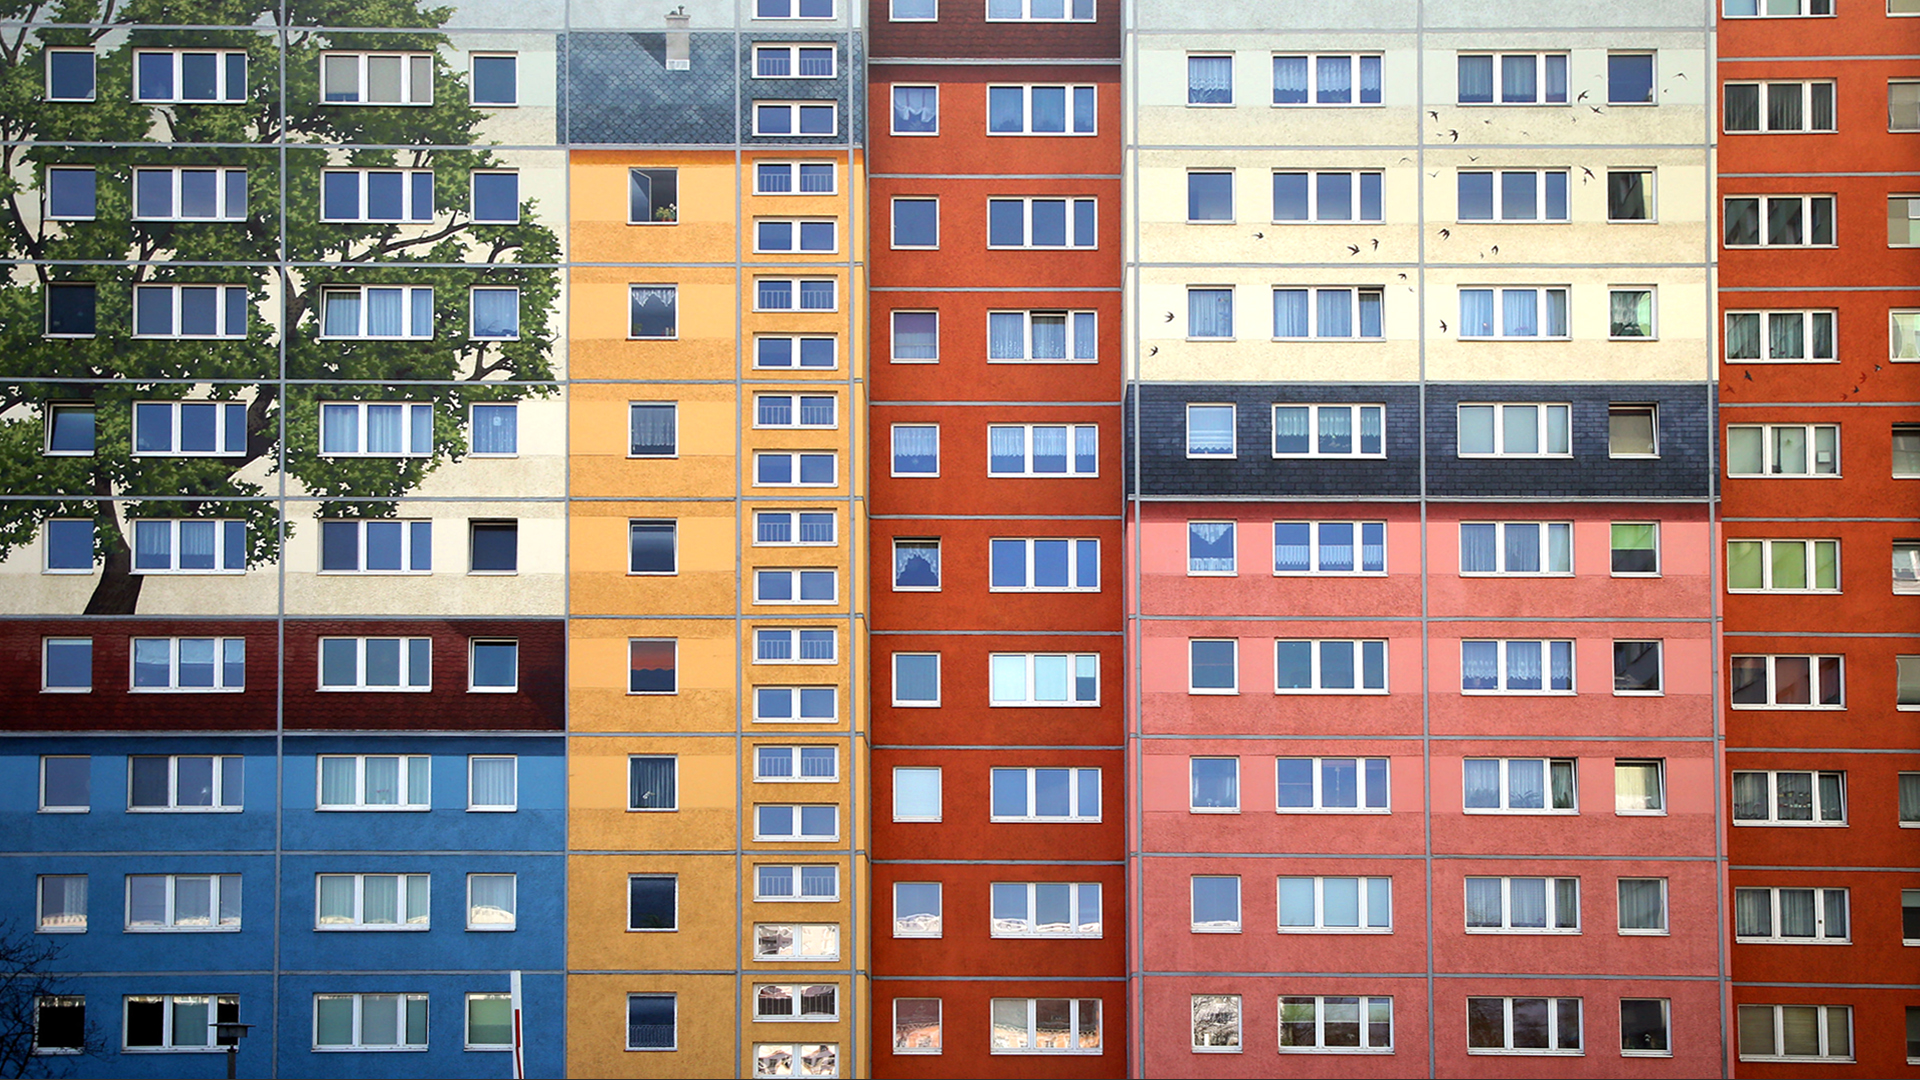 Farbig gestaltete Plattenbauten in Berlin | dpa